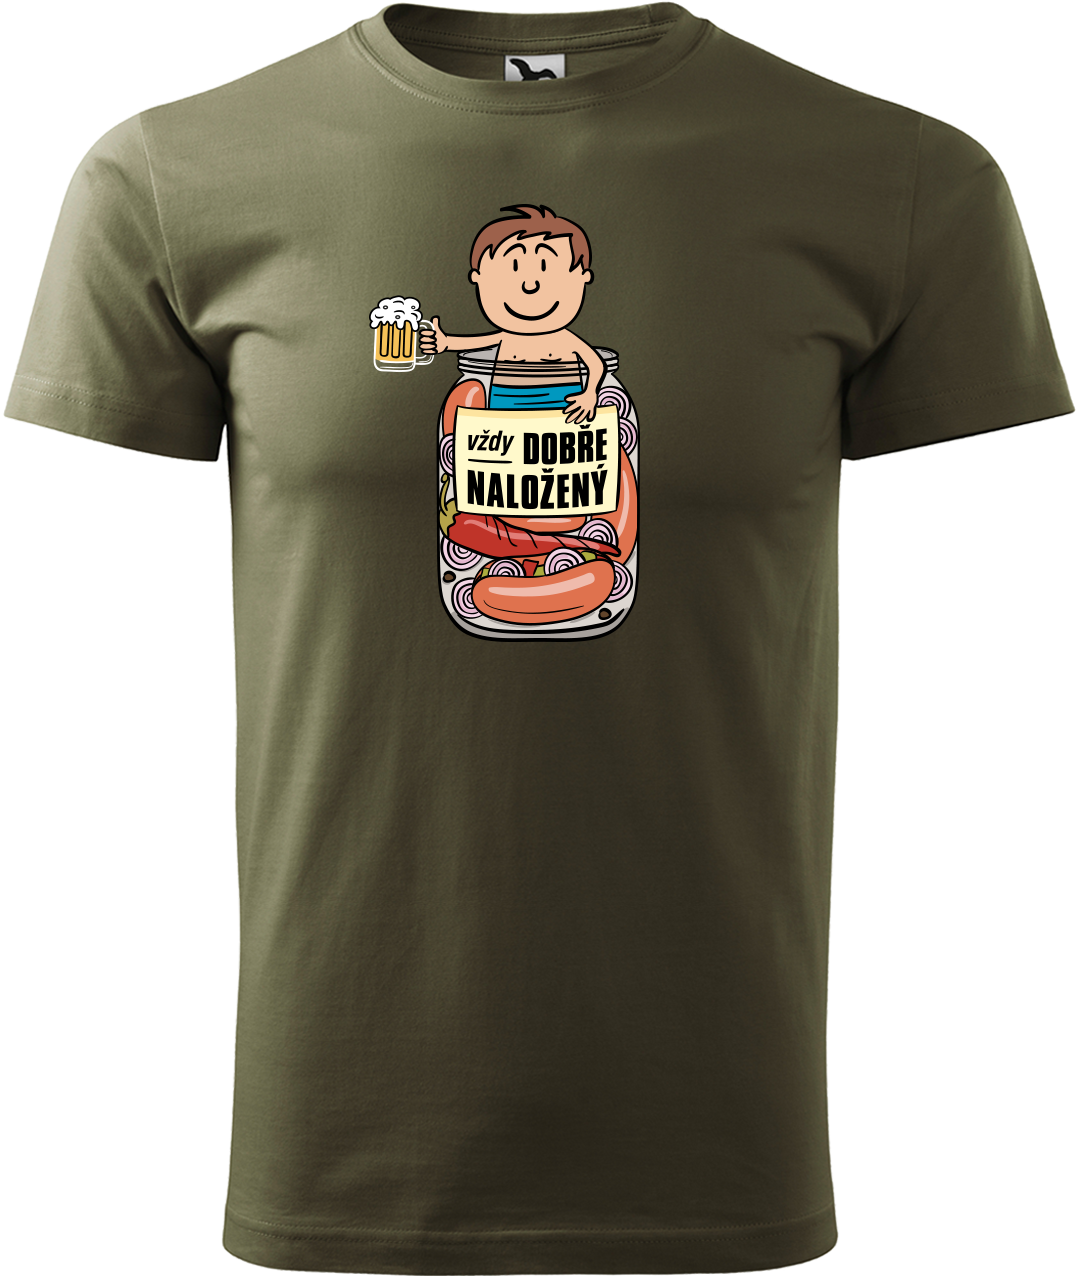 Vtipné tričko - Vždycky dobře naložený Velikost: M, Barva: Military (69)